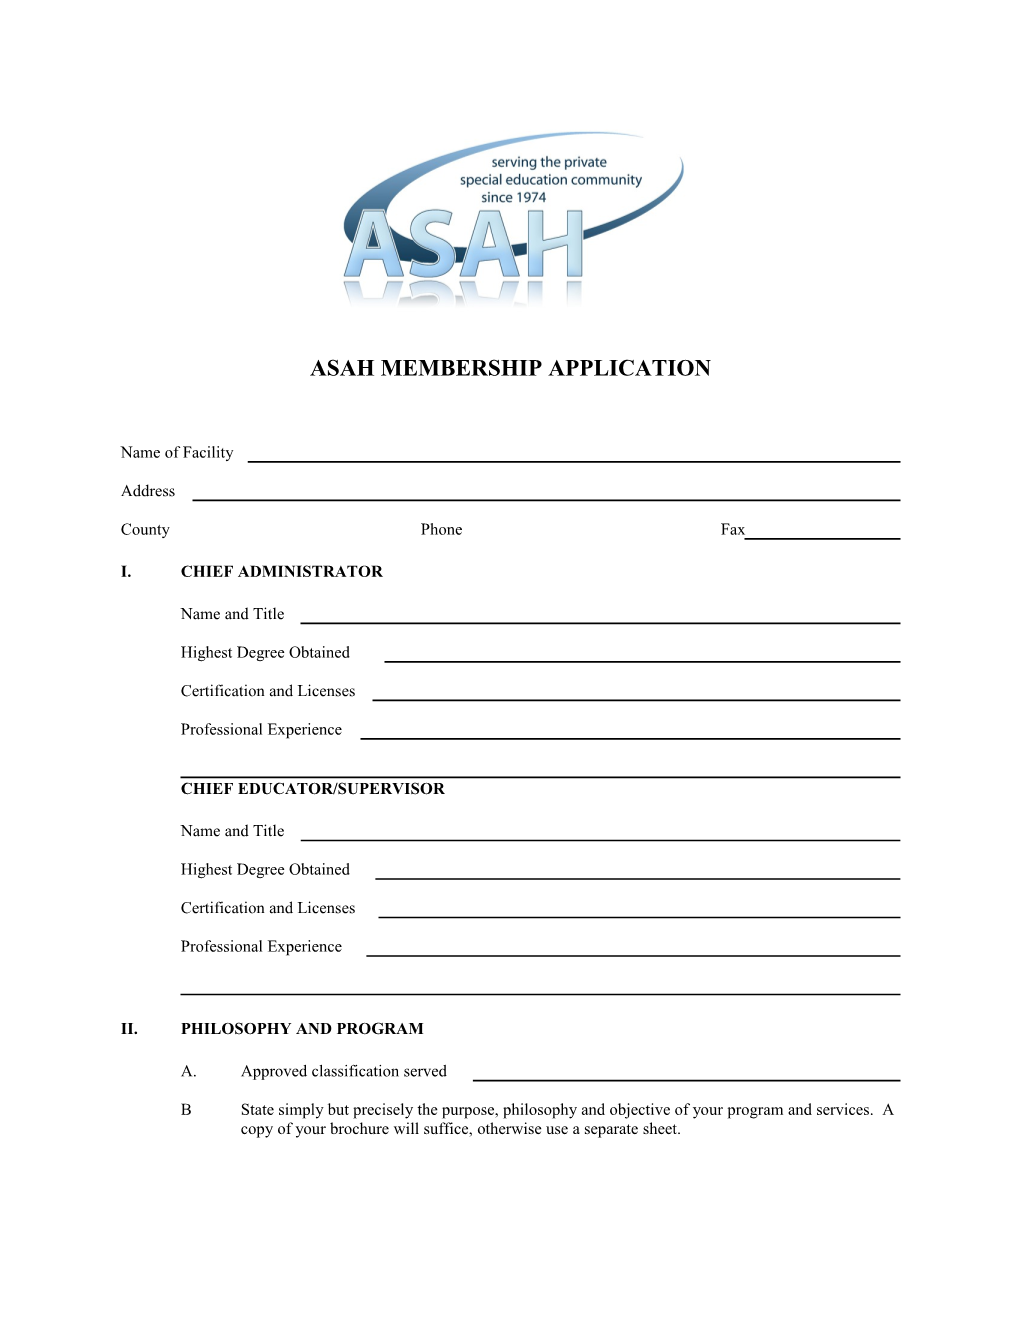 Asah Membership Application